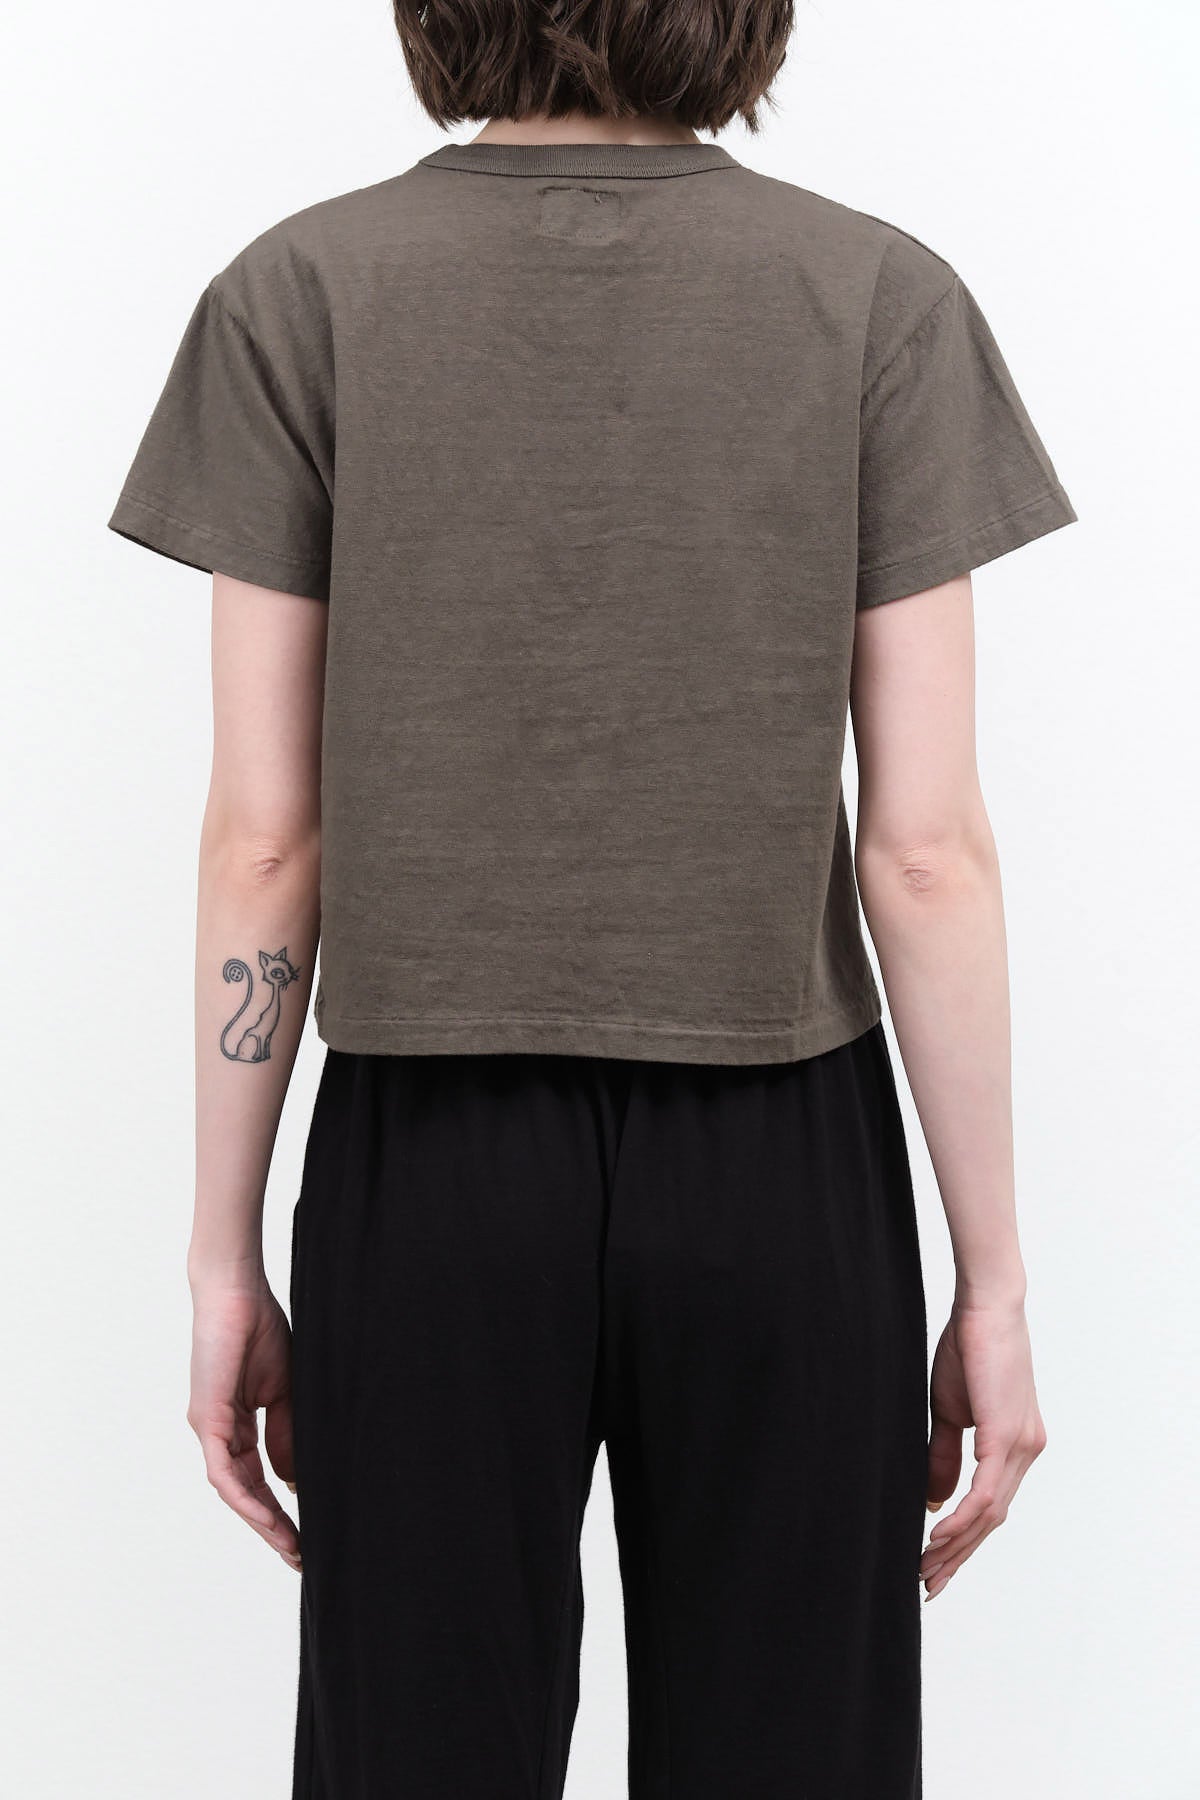 Green Gray Short Sleeve Hi'aka T-shirt by Sunray Sportswear